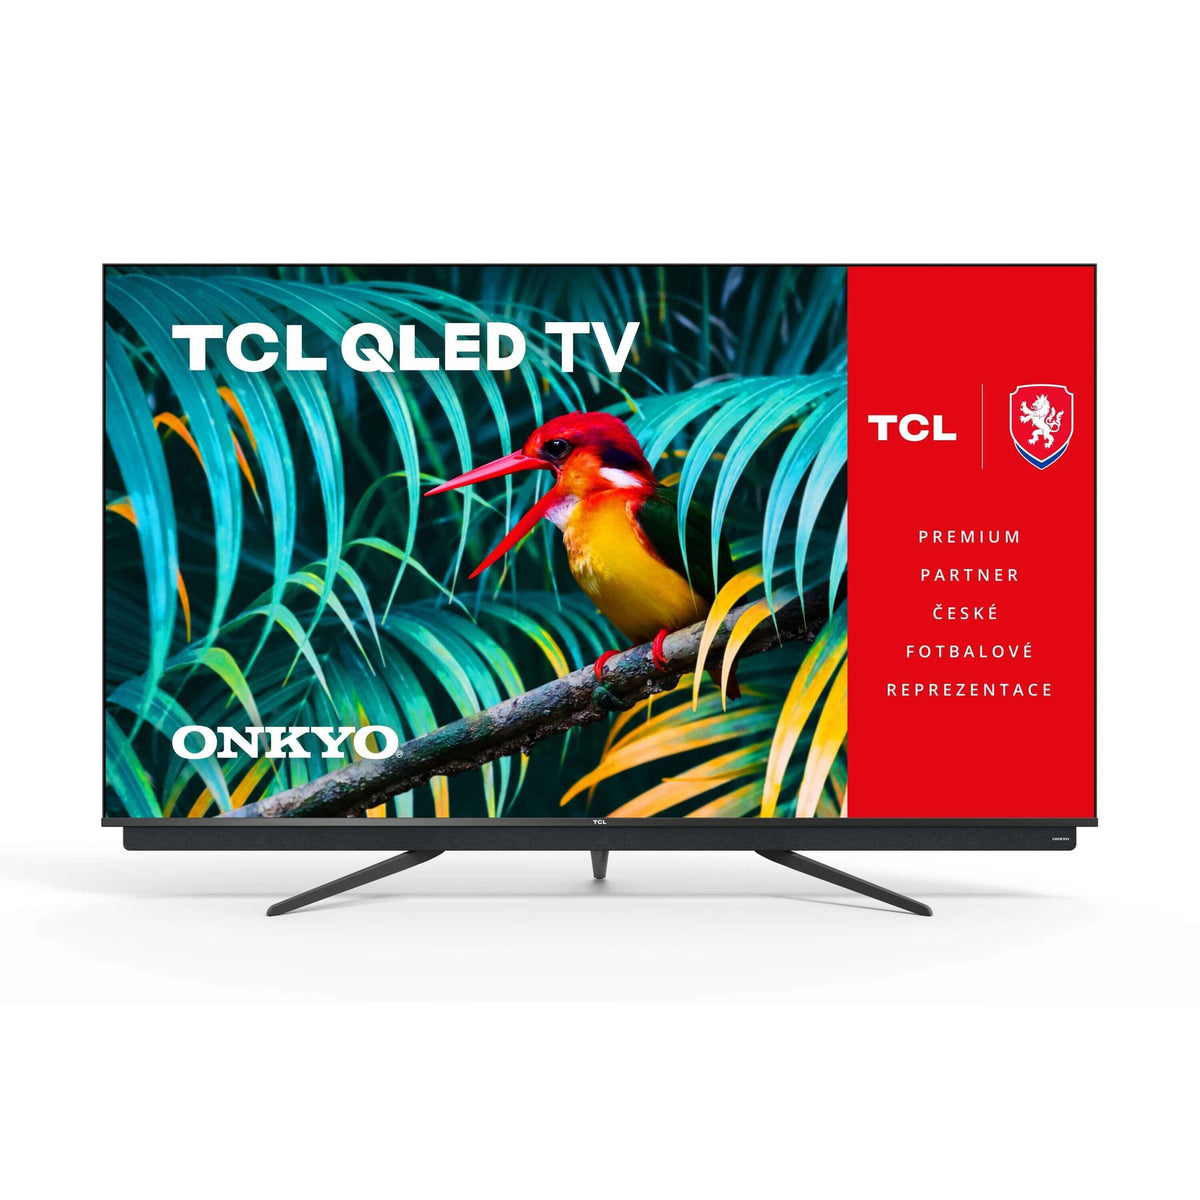 Televize TCL 55C815 (2020) / 55" (139 cm)